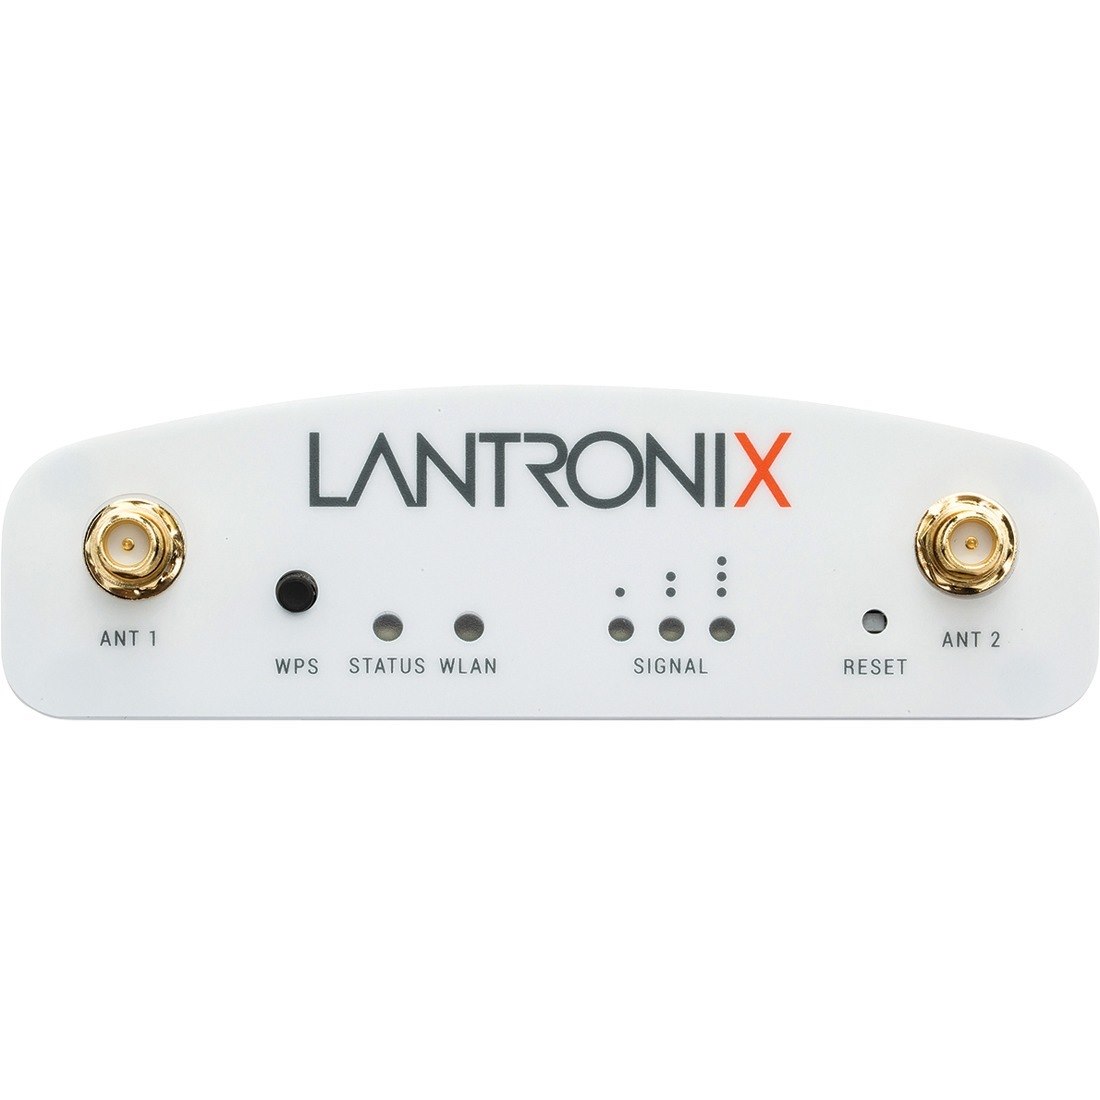 Lantronix SGX 5150 Wireless IoT Gateway, 802.11a/b/g/n/ac, 2xRS485 (RJ45), USB, 10/100 Ethernet, PoE, Japan Model